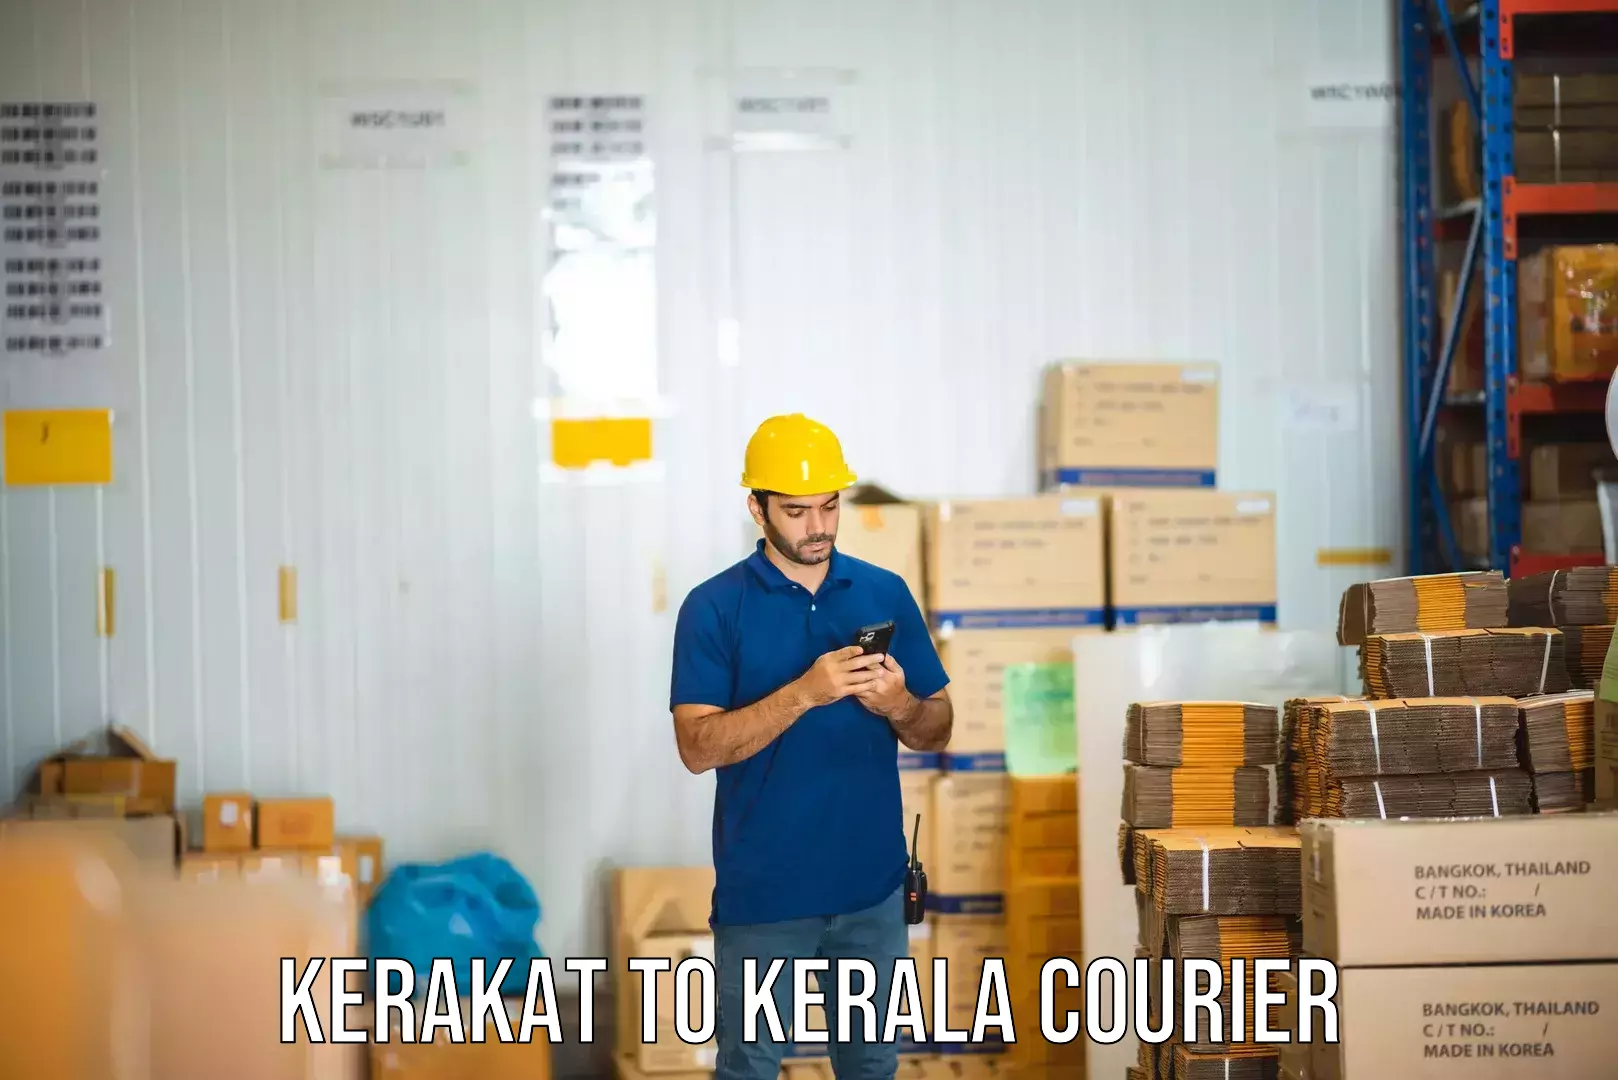 Expedited shipping methods Kerakat to Nenmara